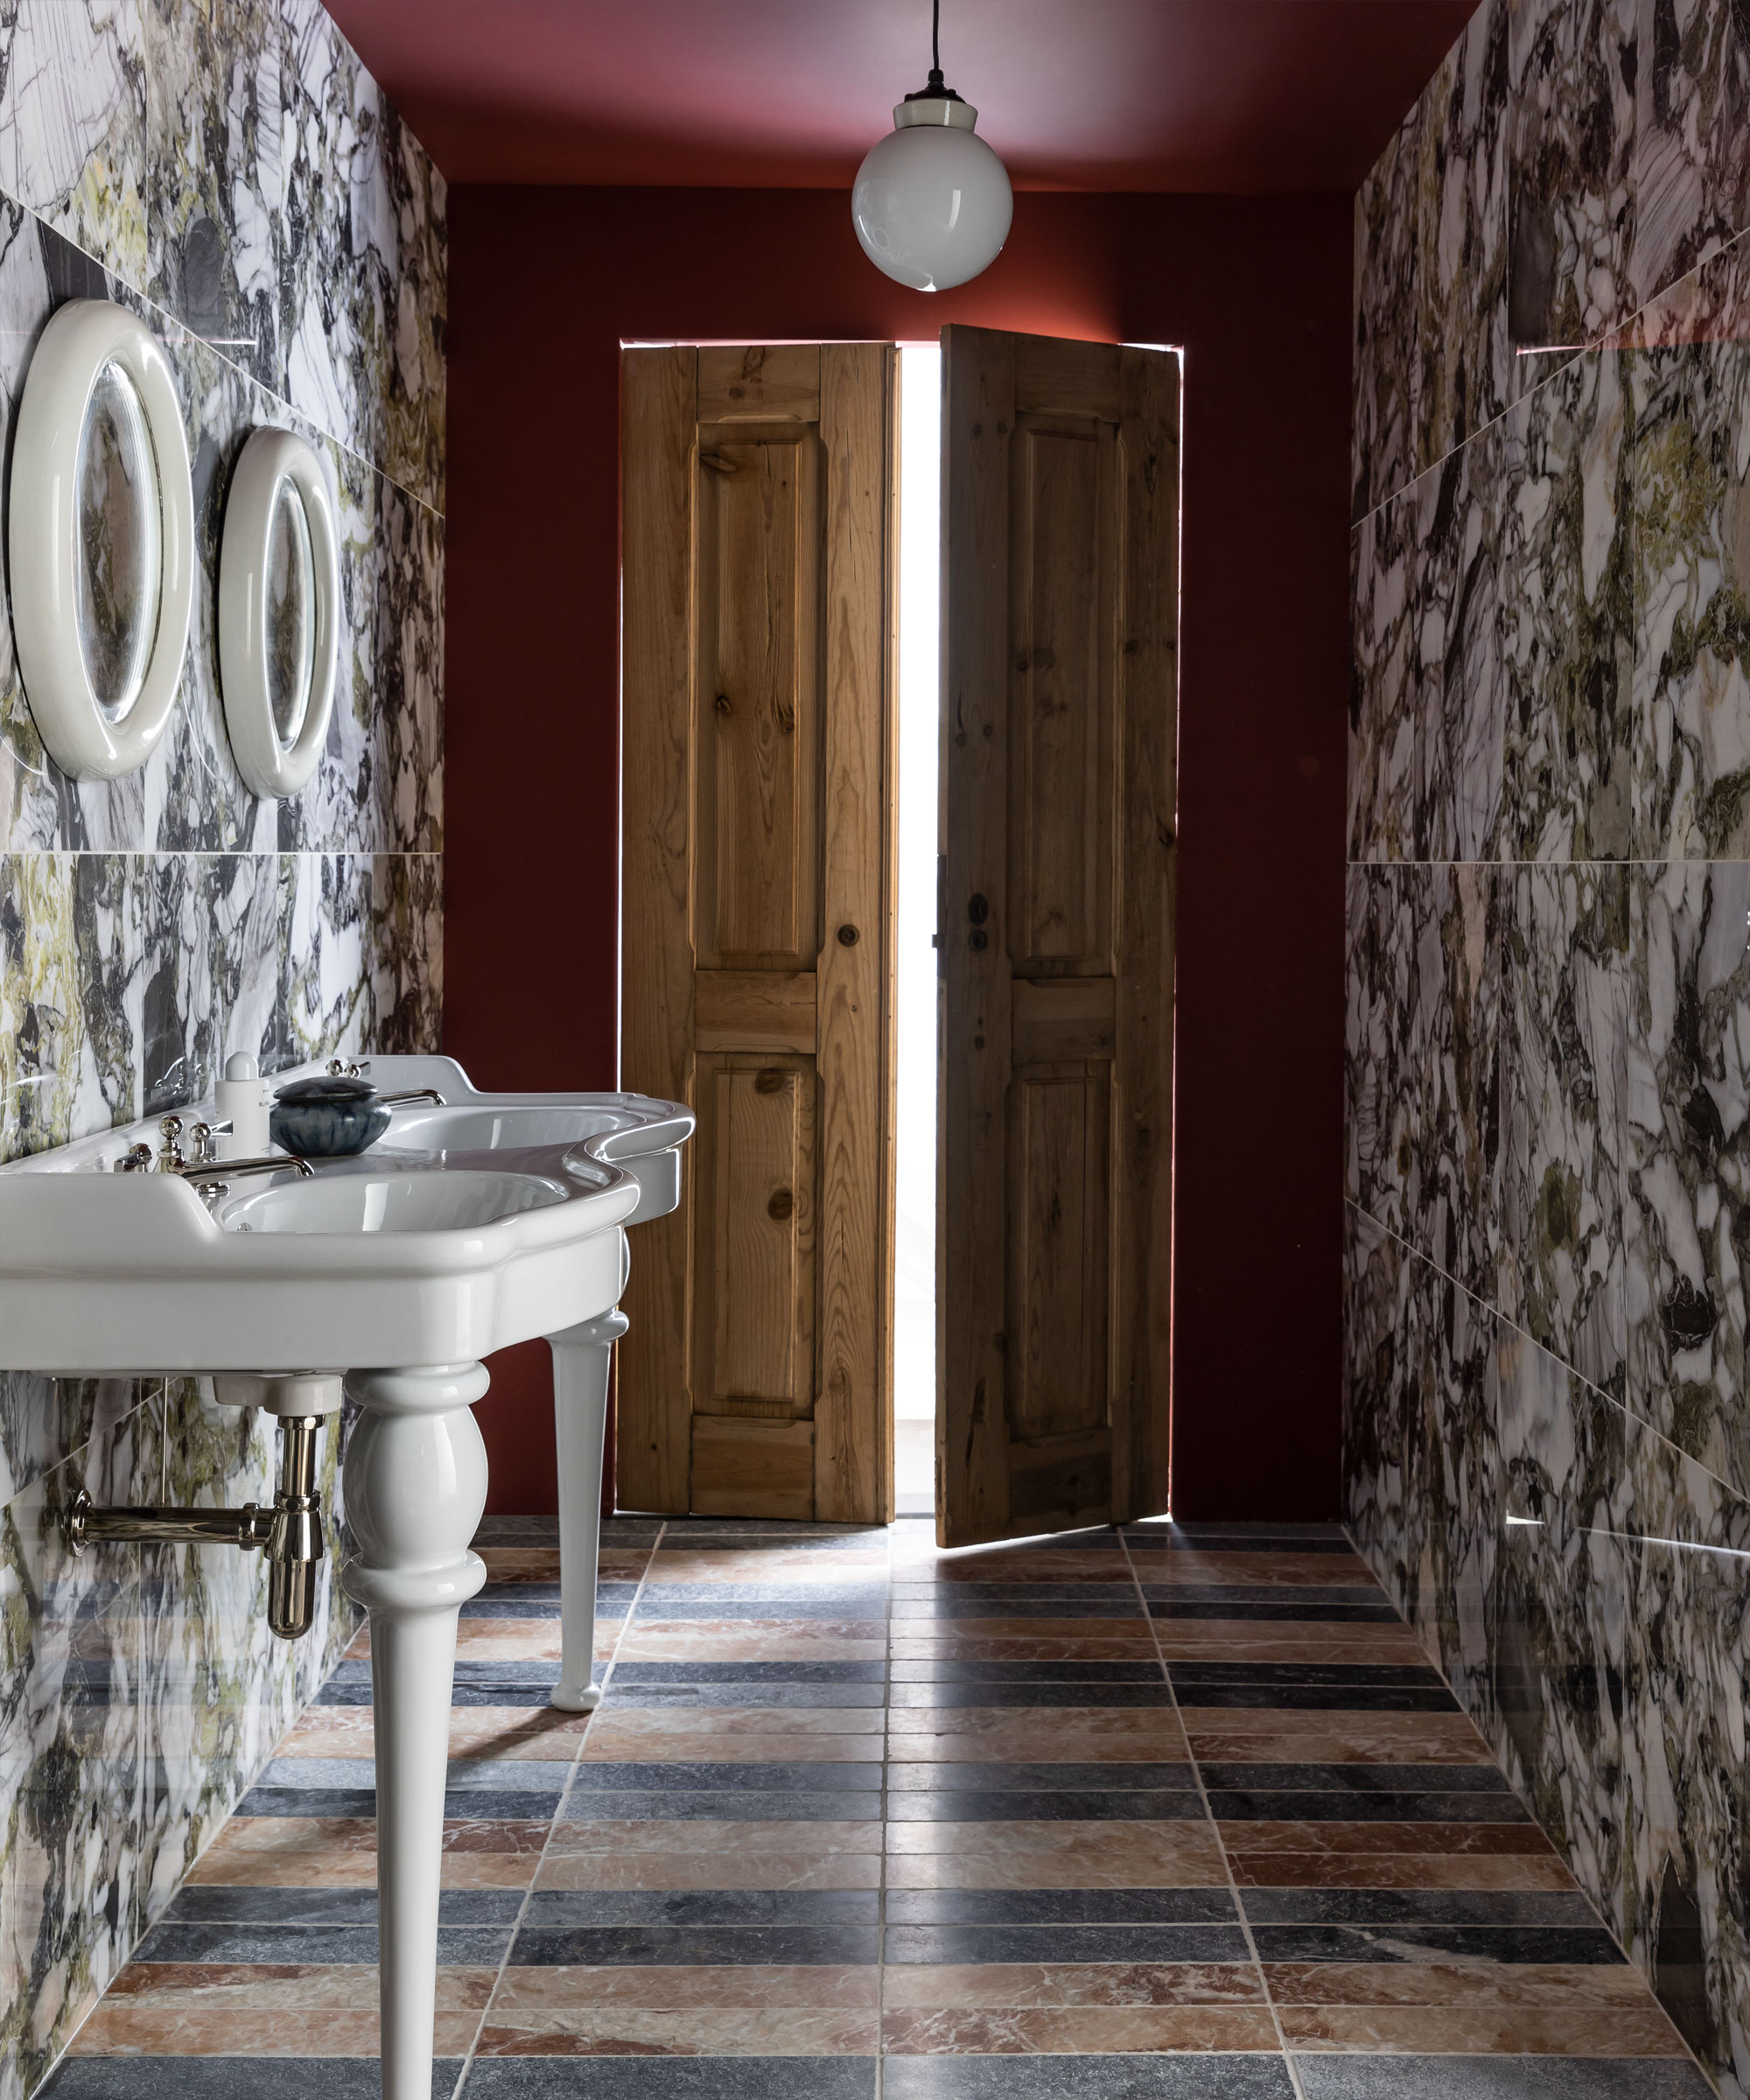 Baño con paredes y techo pintados de rojo, pisos y azulejos de mármol, lavabo doble blanco, espejos blancos redondeados a juego en la parte superior, puertas de madera, colgante redondeado de vidrio blanco